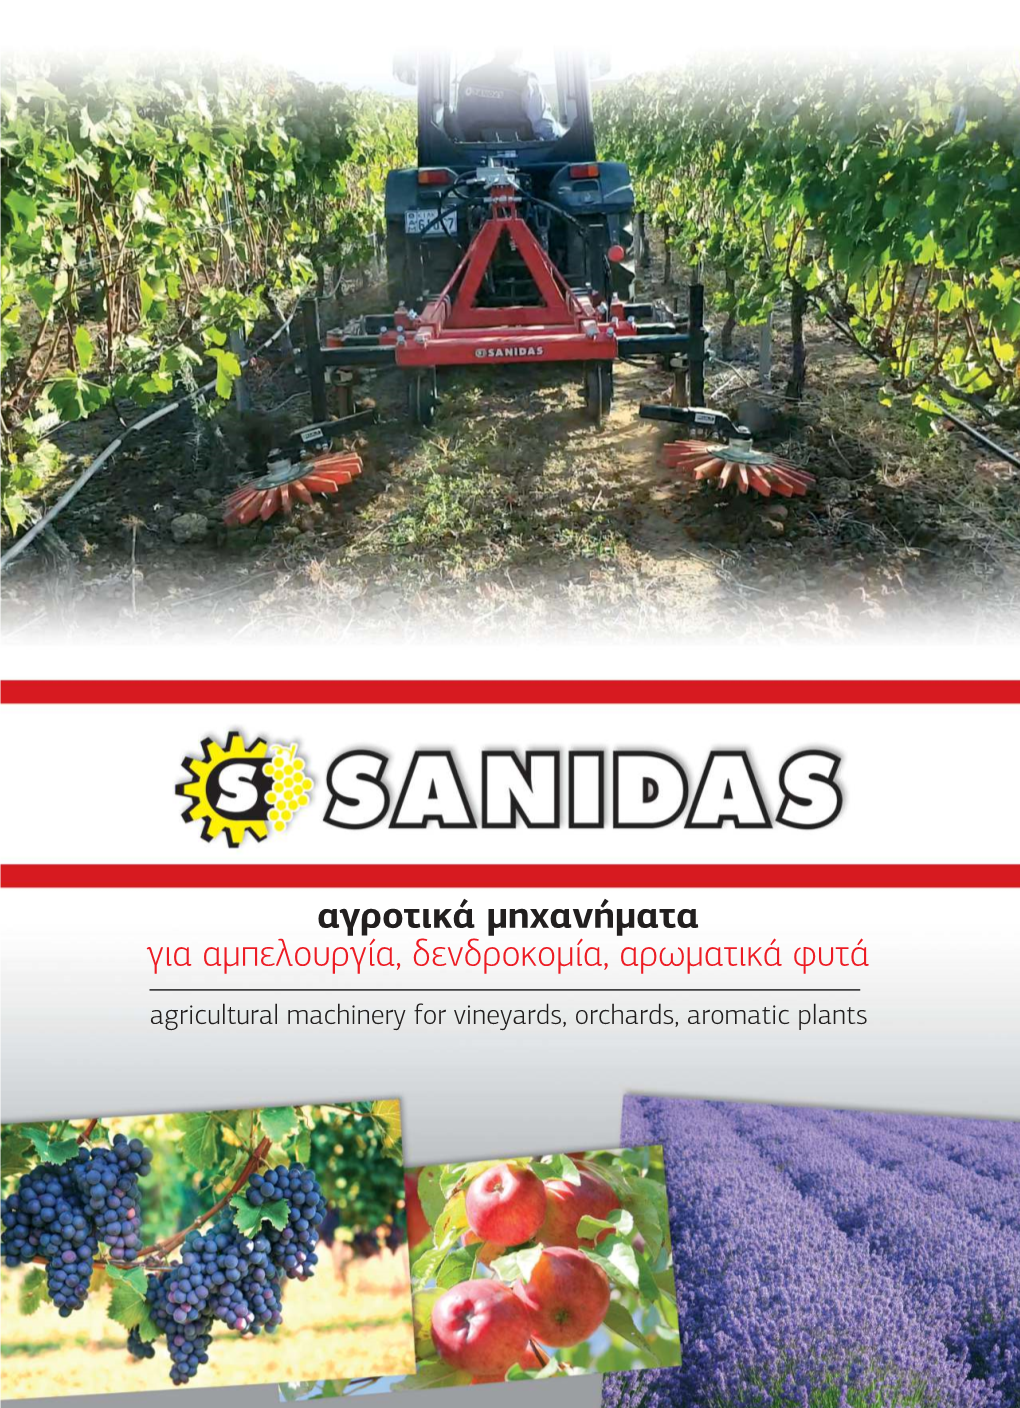 Αγροτικά Μηχανήματα Για Αμπελουργία, Δενδροκομία, Αρωματικά Φυτά Agricultural Machinery for Vineyards, Orchards, Aromatic Plants SKL SKR